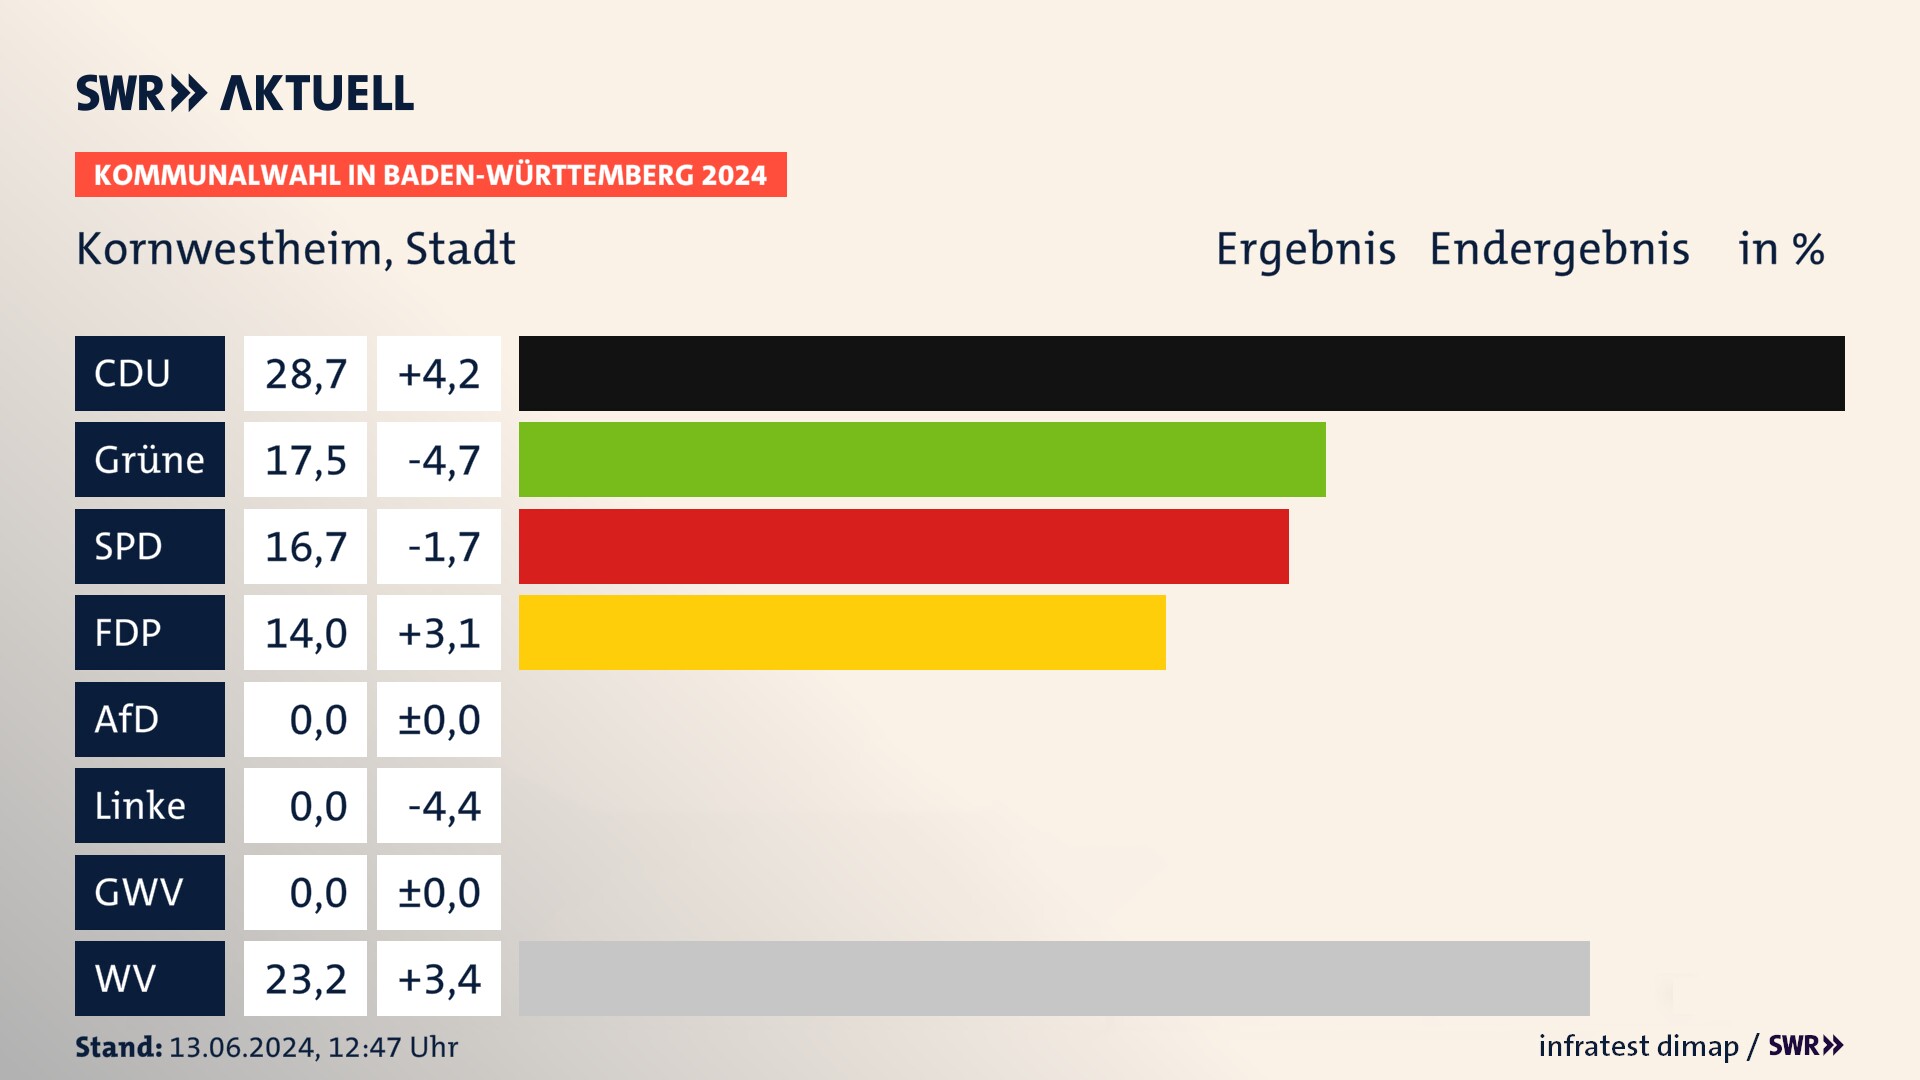 Kommunalwahl 2024 Endergebnis Zweitstimme für Kornwestheim. In Kornwestheim, Stadt erzielt die CDU 28,7 Prozent der gültigen  Stimmen. Die Grünen landen bei 17,5 Prozent. Die SPD erreicht 16,7 Prozent. Die FDP kommt auf 14,0 Prozent. Die Wählervereinigungen landen bei 23,2 Prozent.